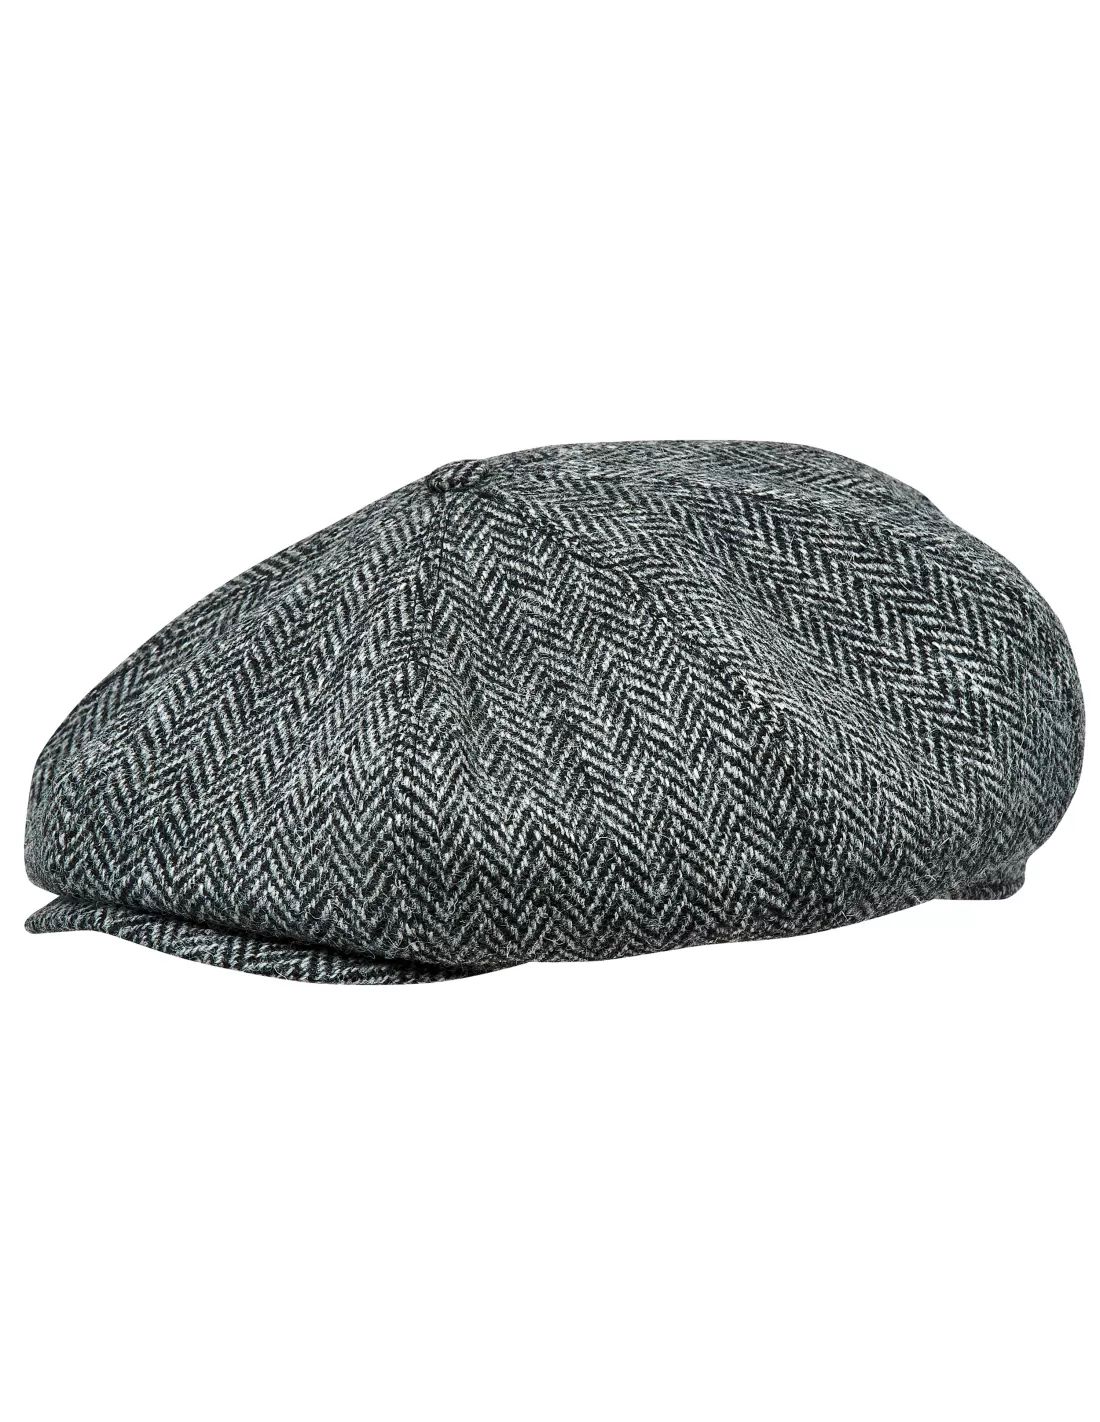 G&H Dark Grey Herringbone Wool Newsboy 8 Panel Peaky Blinders Style Flat Cap Hat 